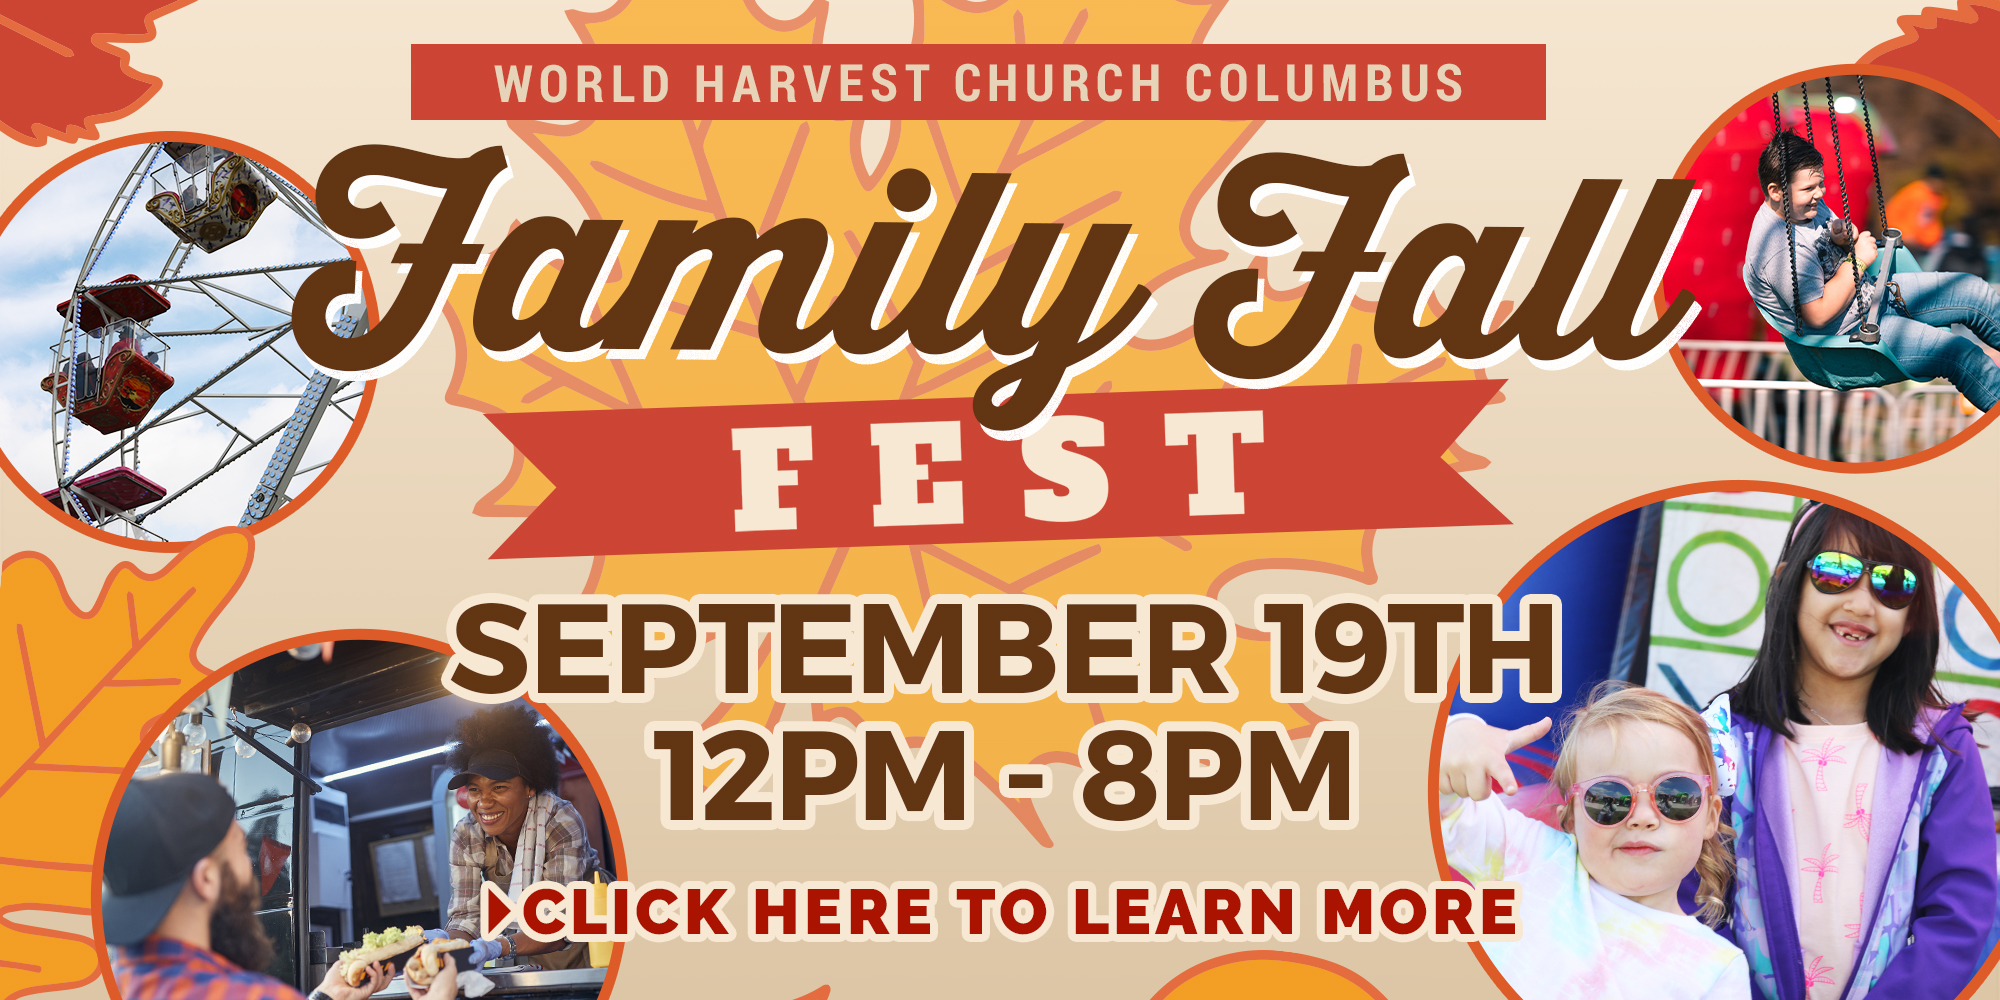 World Harvest Church Family Fall Fest September 19 at 12-8PM